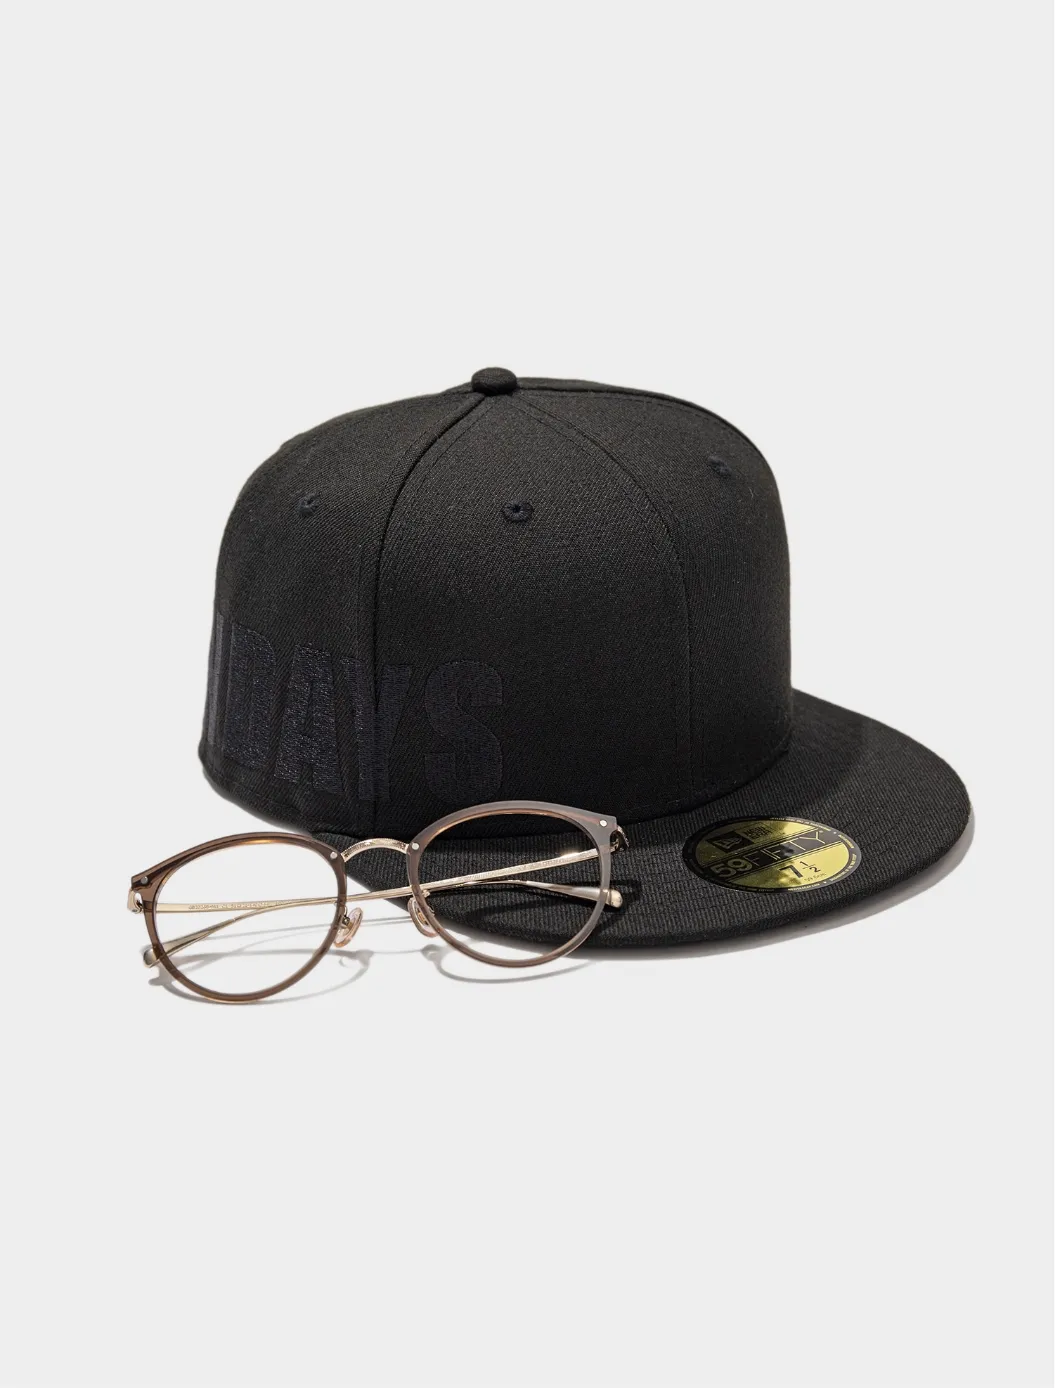 NEW ERA® COLLABORATION CAP(ヘッドウェア/ハット/キャップ) × GB2026B-9S C1(メガネ/眼鏡/めがね) おすすめの組み合わせ